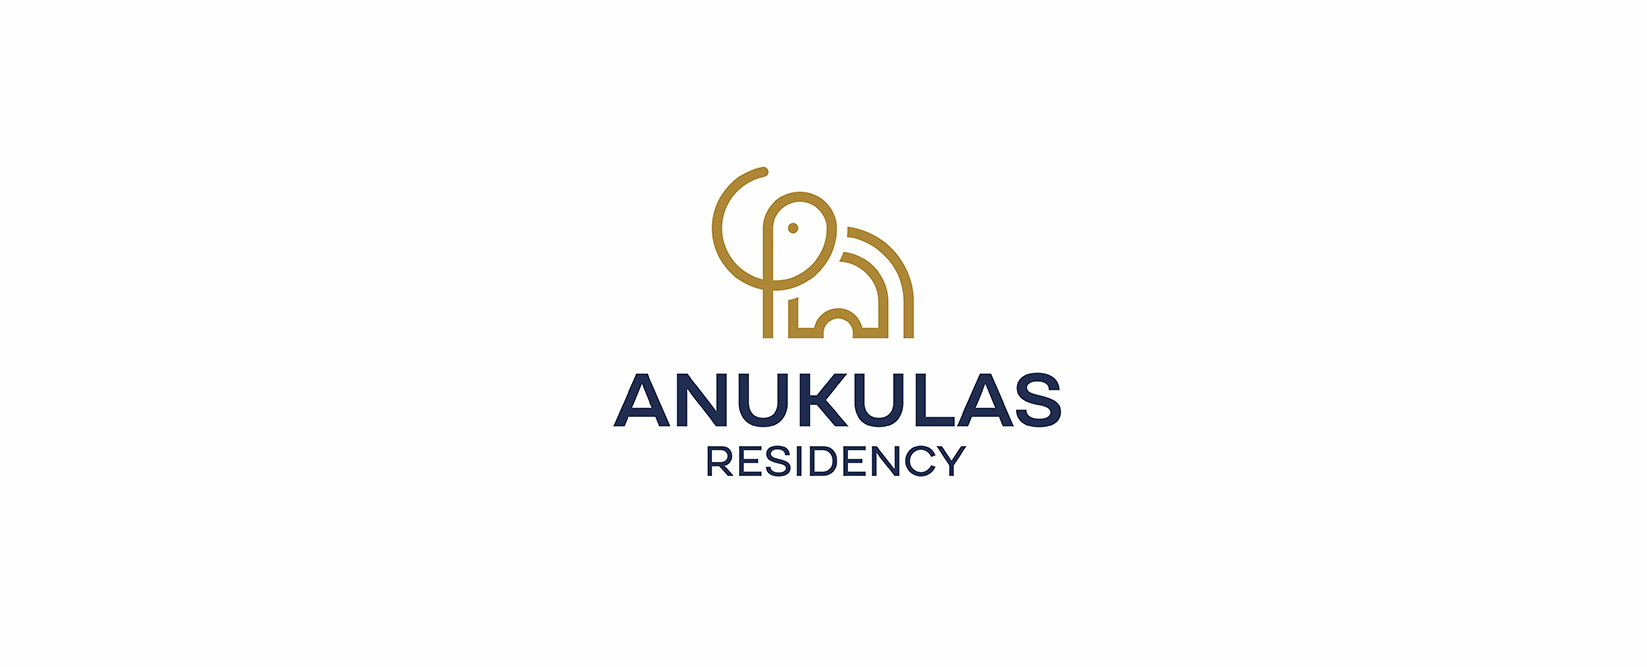 Anukullas-residency-whitelogo